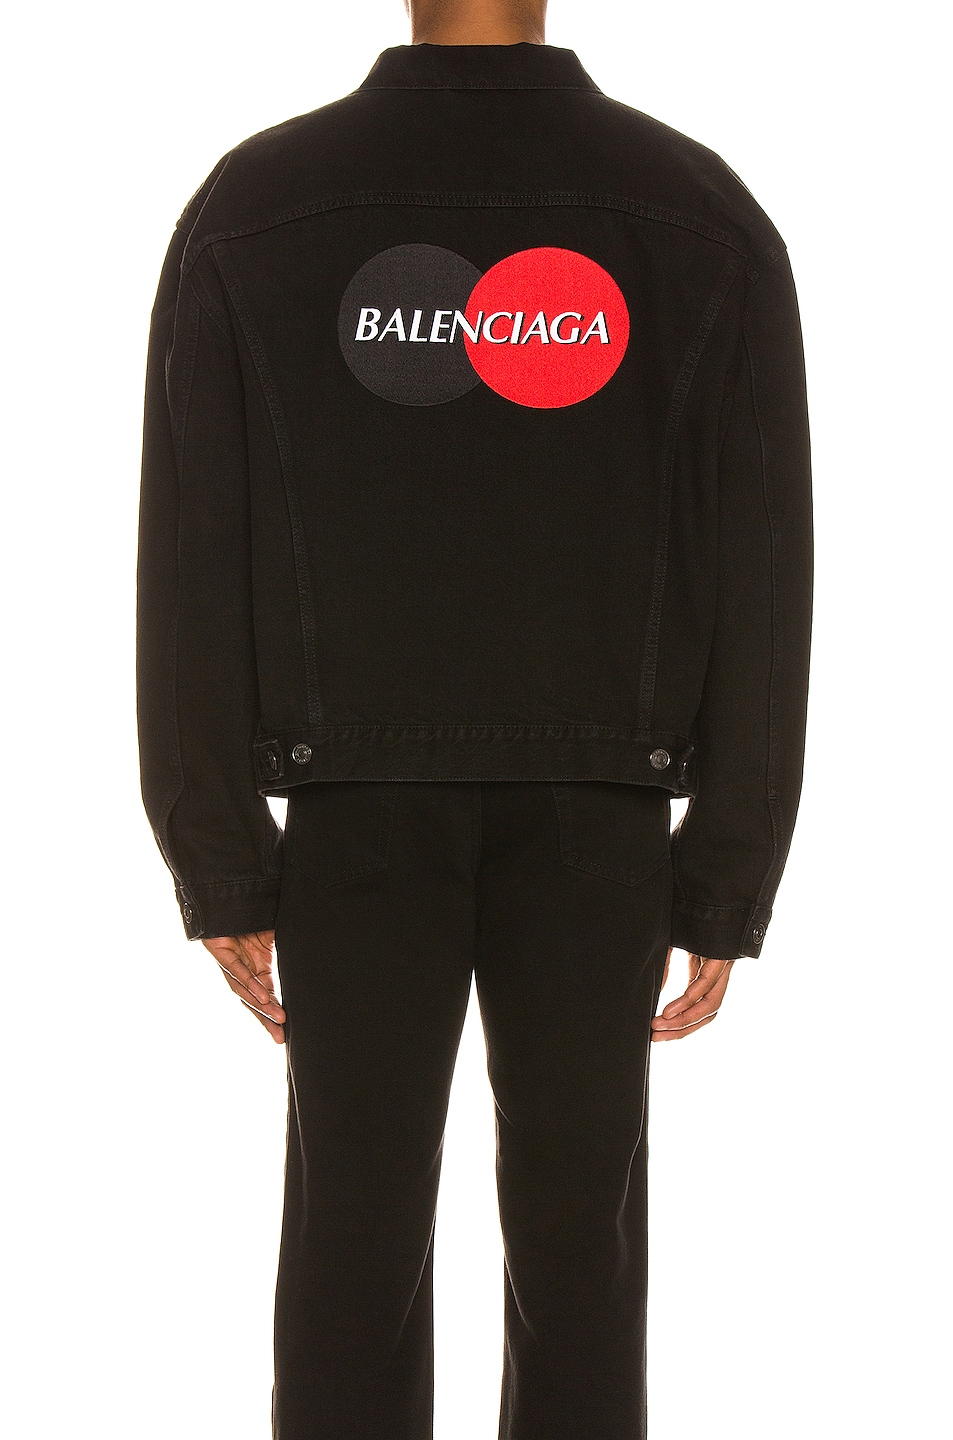 Balenciaga Uniform Logo Jacket in Pitch Black | FWRD